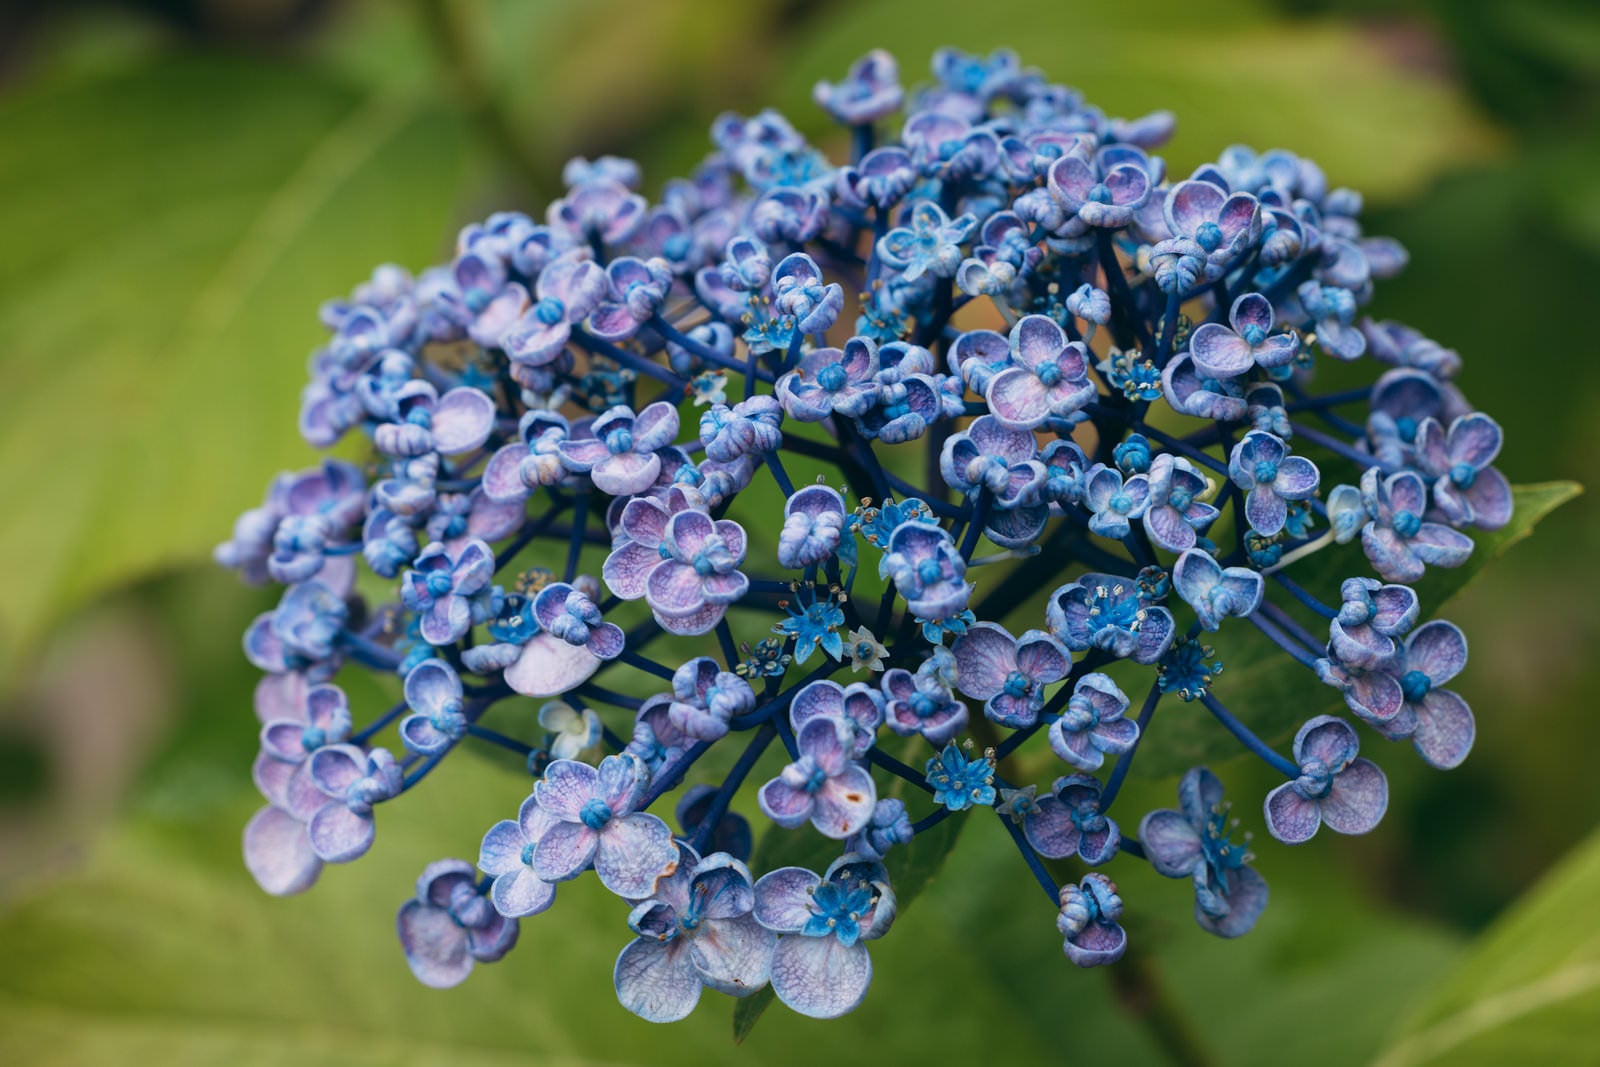 「ウズアジサイの青い花」の写真